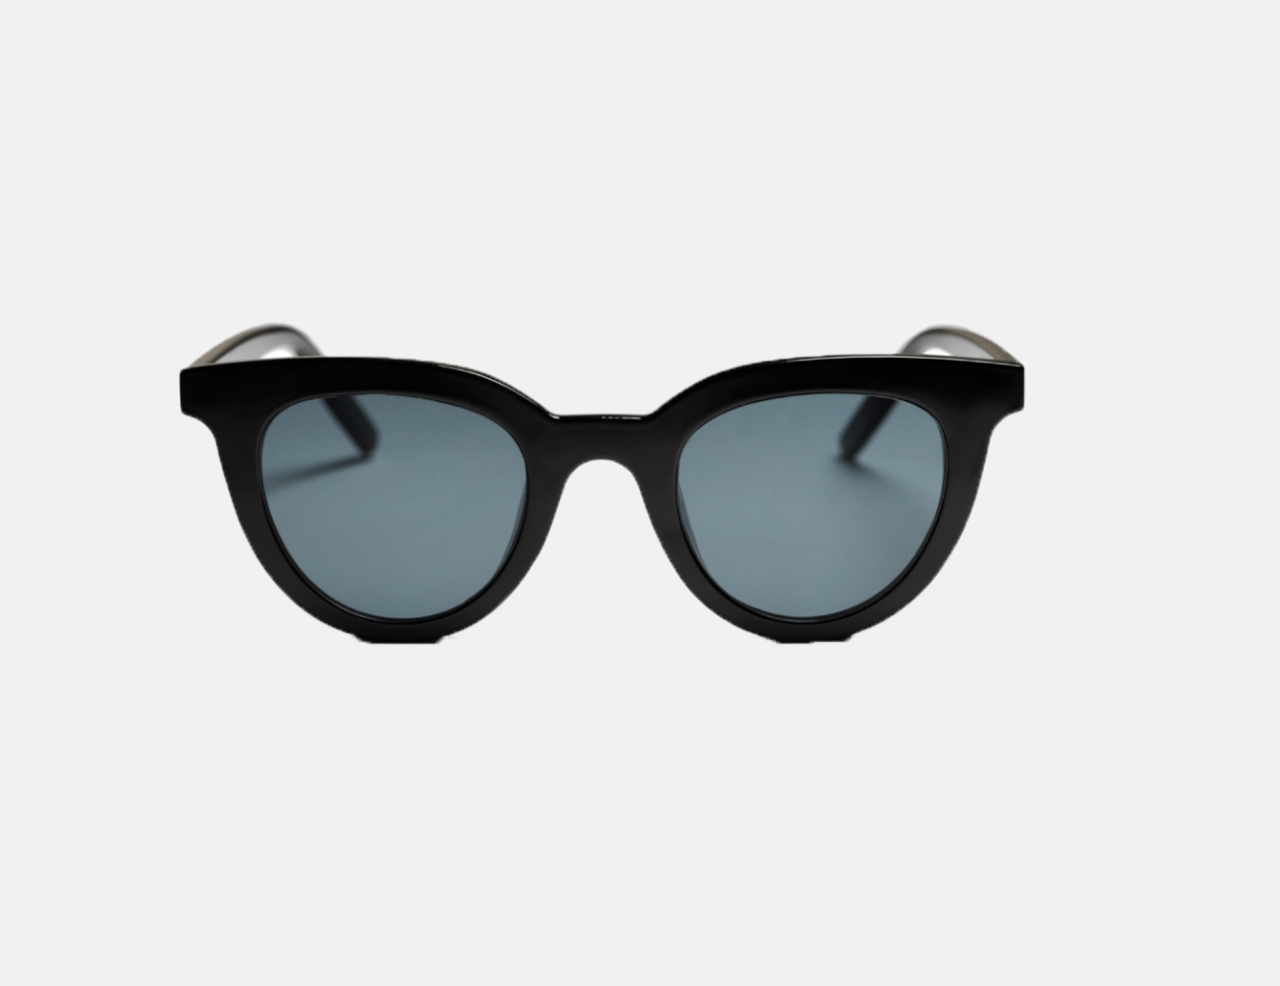 CHPO Långholmen Sunglasses